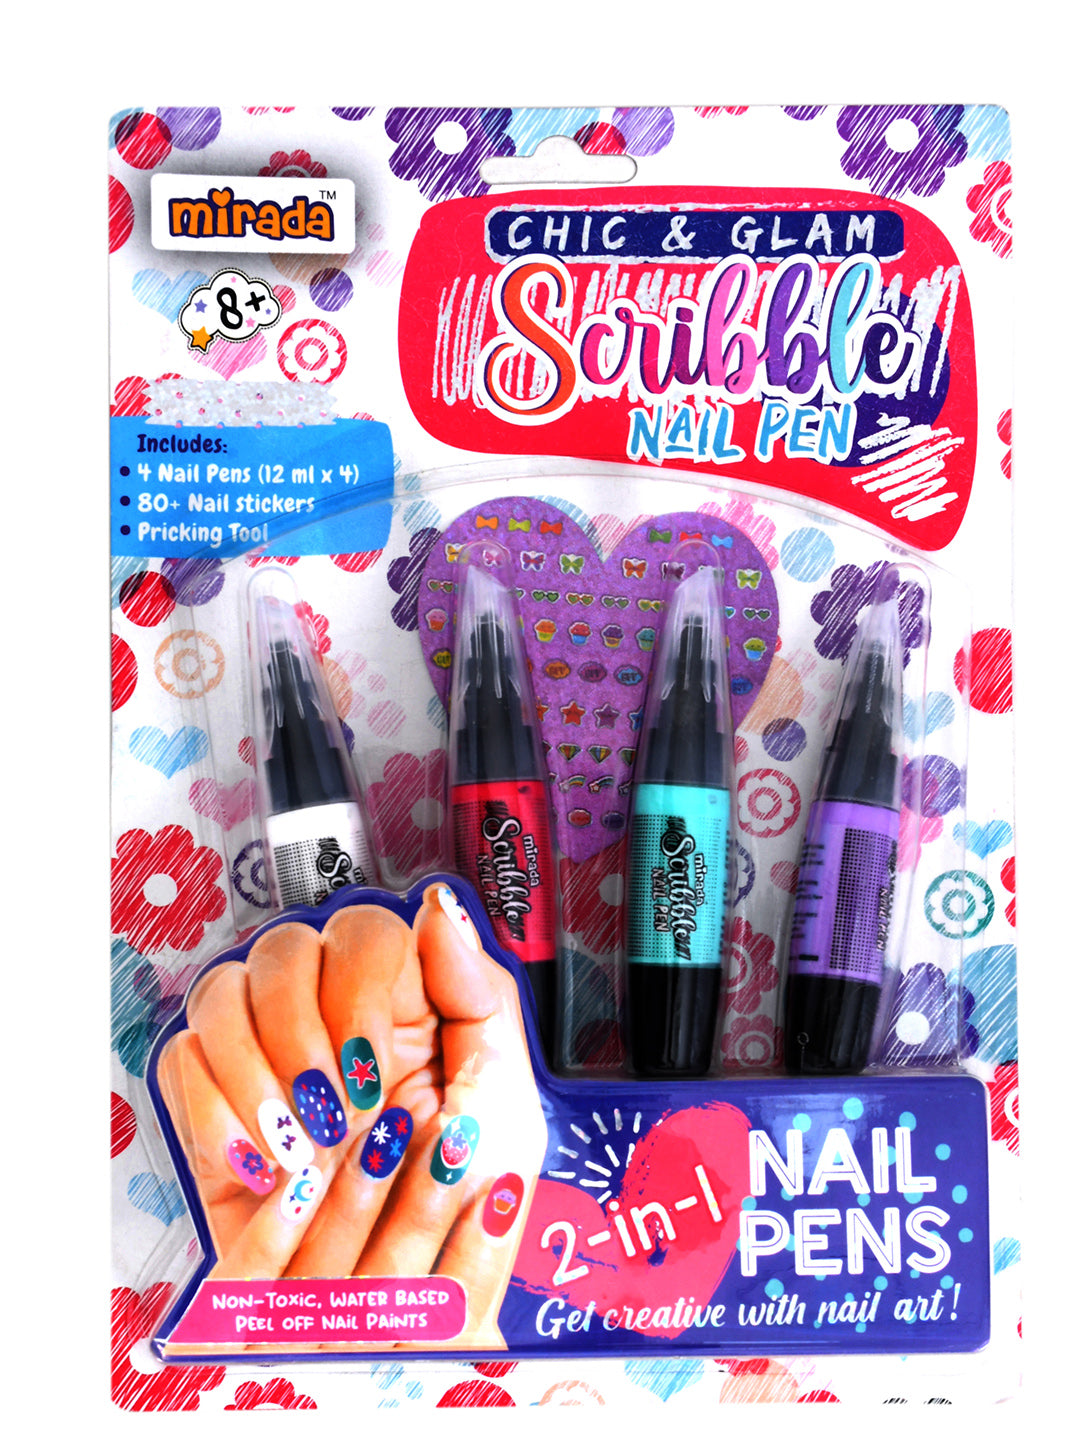 Mirada Chic & Glam Scribble Nail Pen Nail Art Kit for Girl